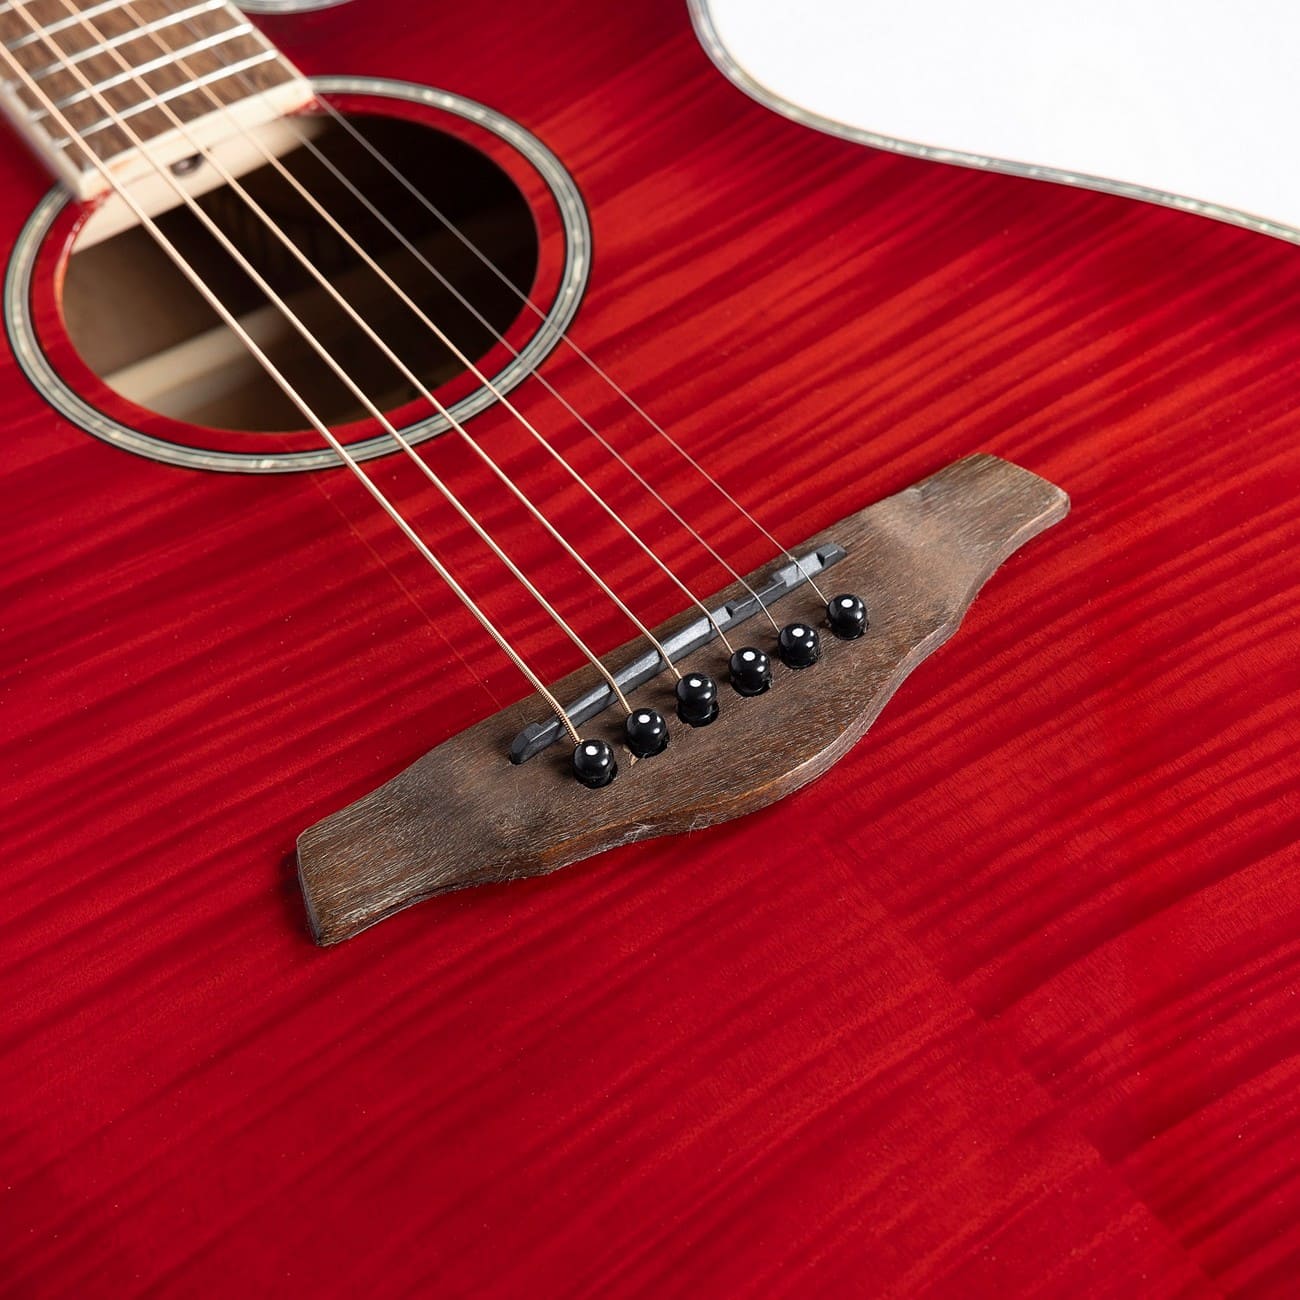 Акустическая гитара Sevillia DS-200 RD